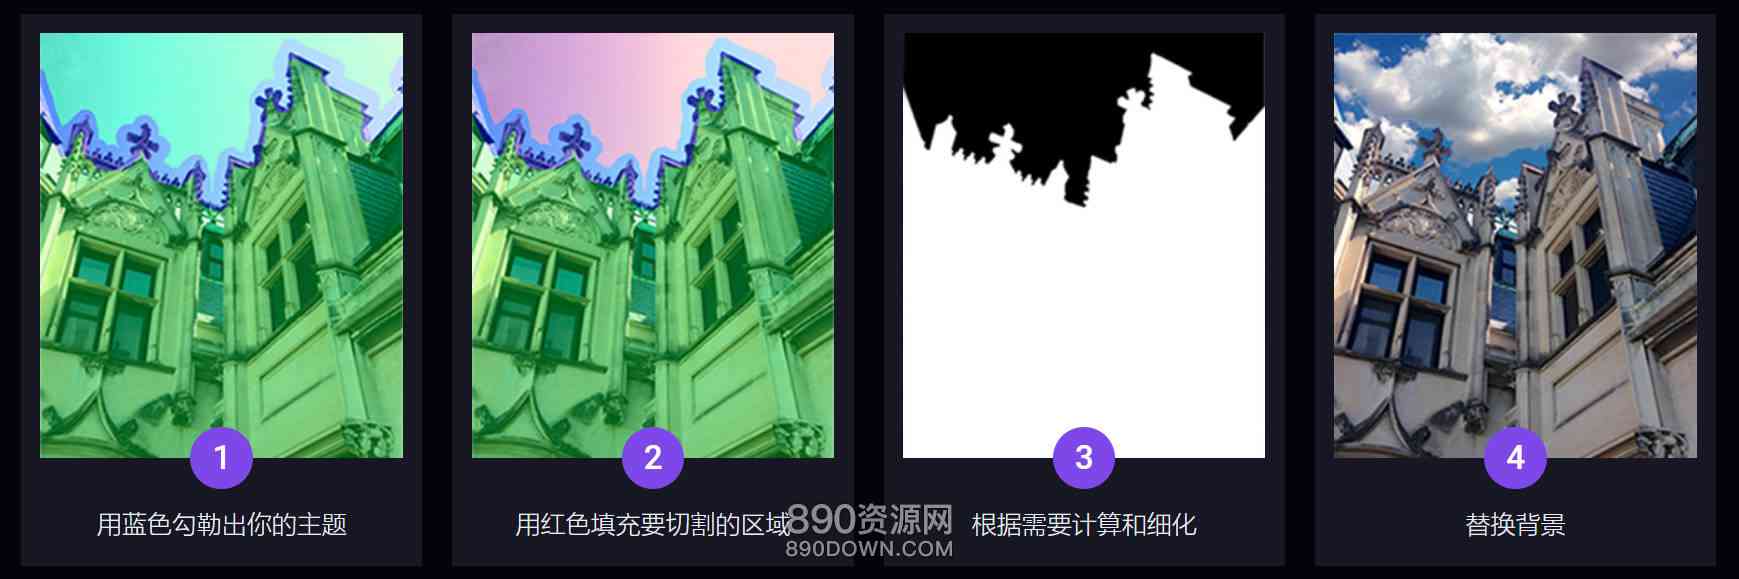 中文汉化人工智能摄影图像照片智能蒙版自动抠图软件Topaz-Mask AI 1.3.6 Win